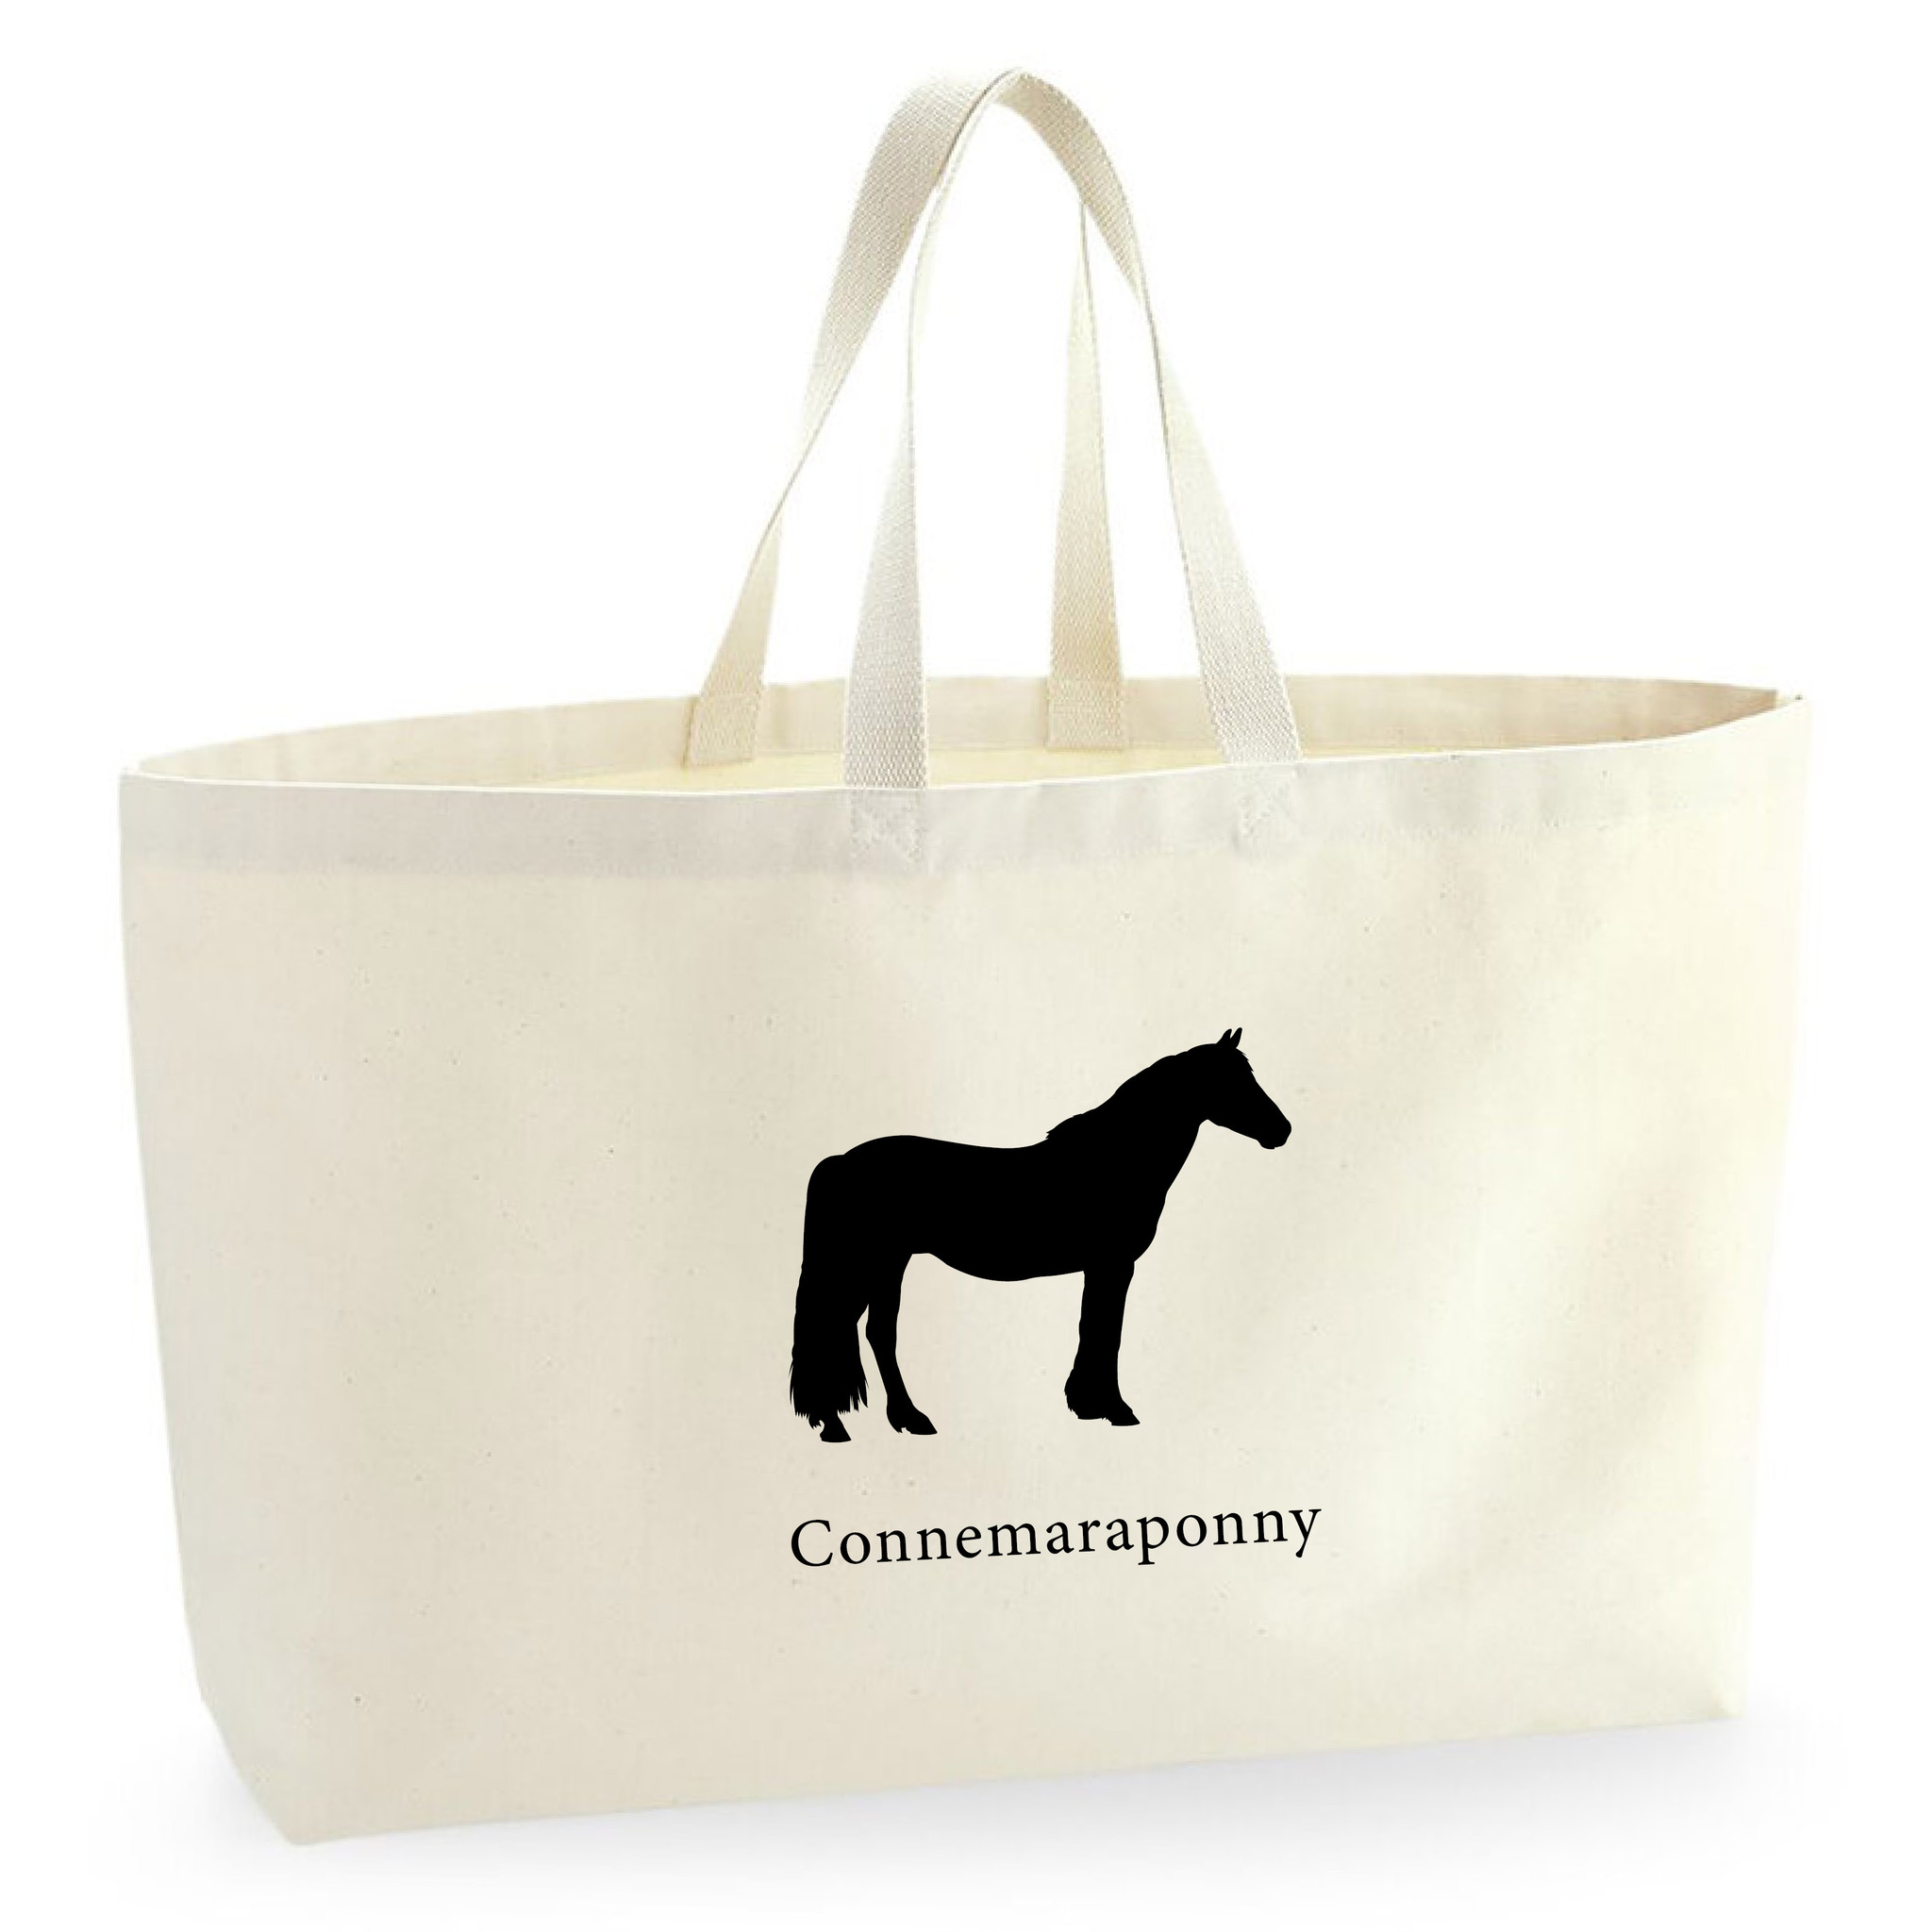 Tygkasse Connemaraponny - Oversized bag